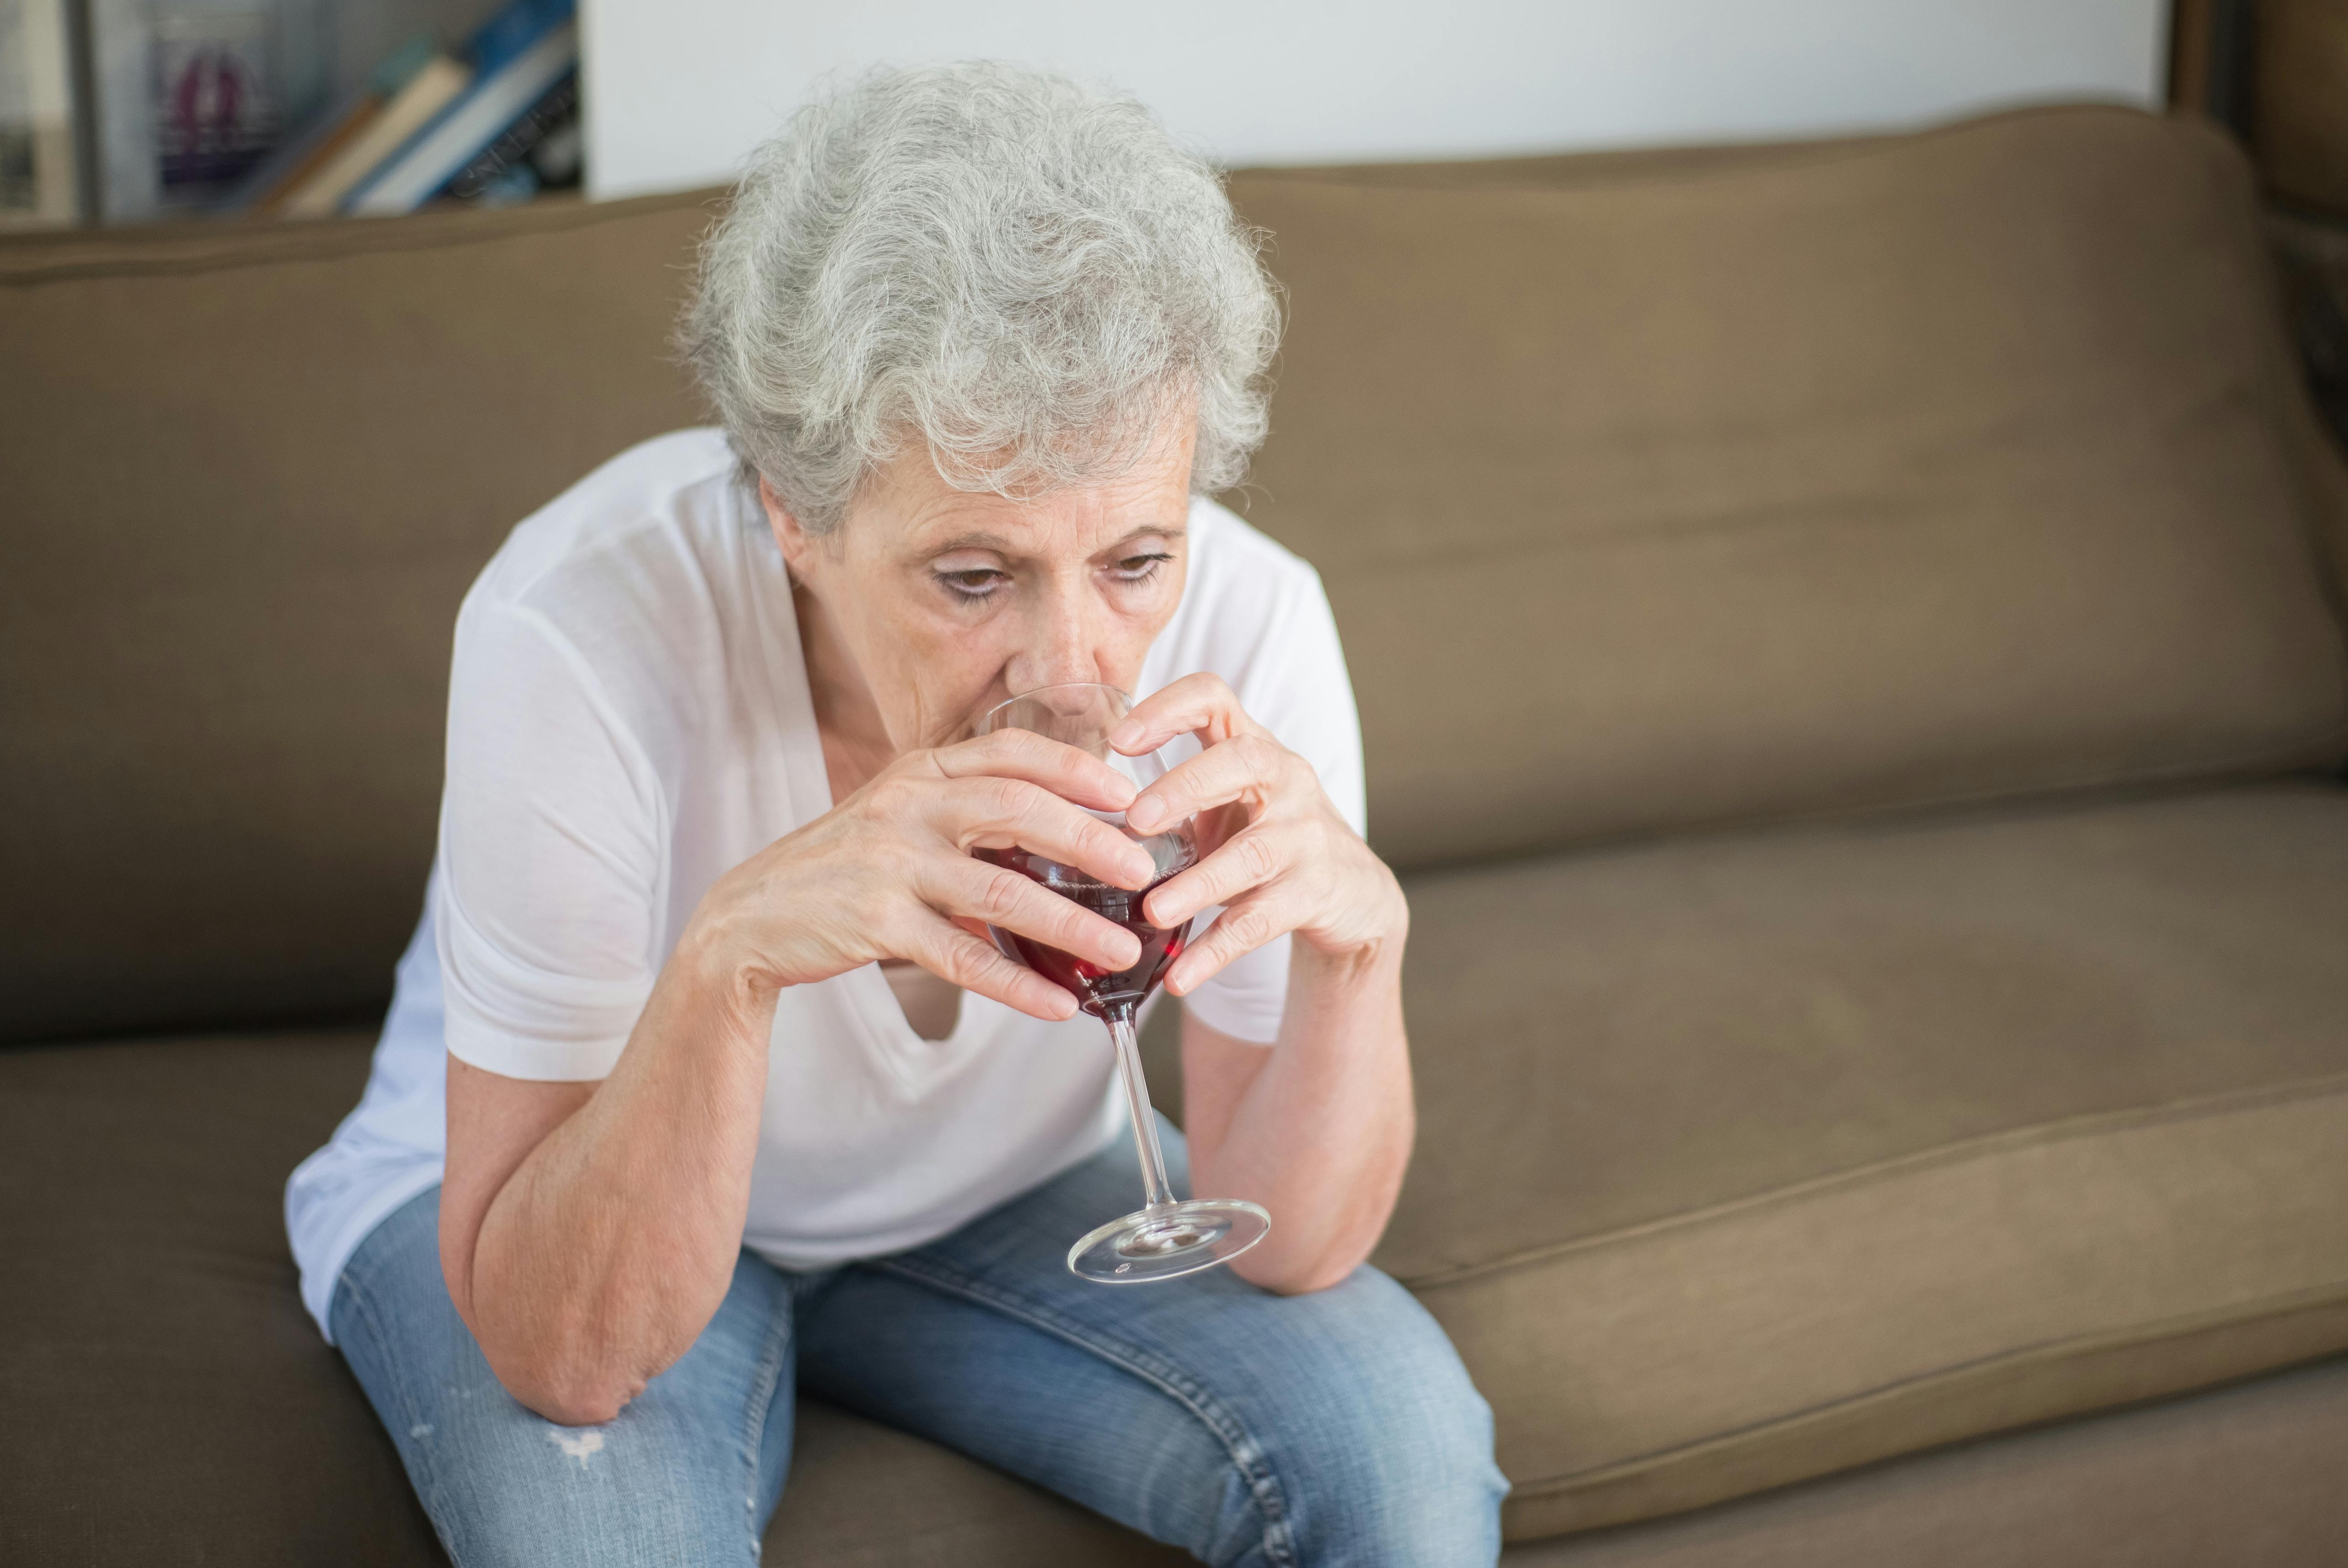 Una mujer triste bebiendo vino sola | Fuente: Pexels